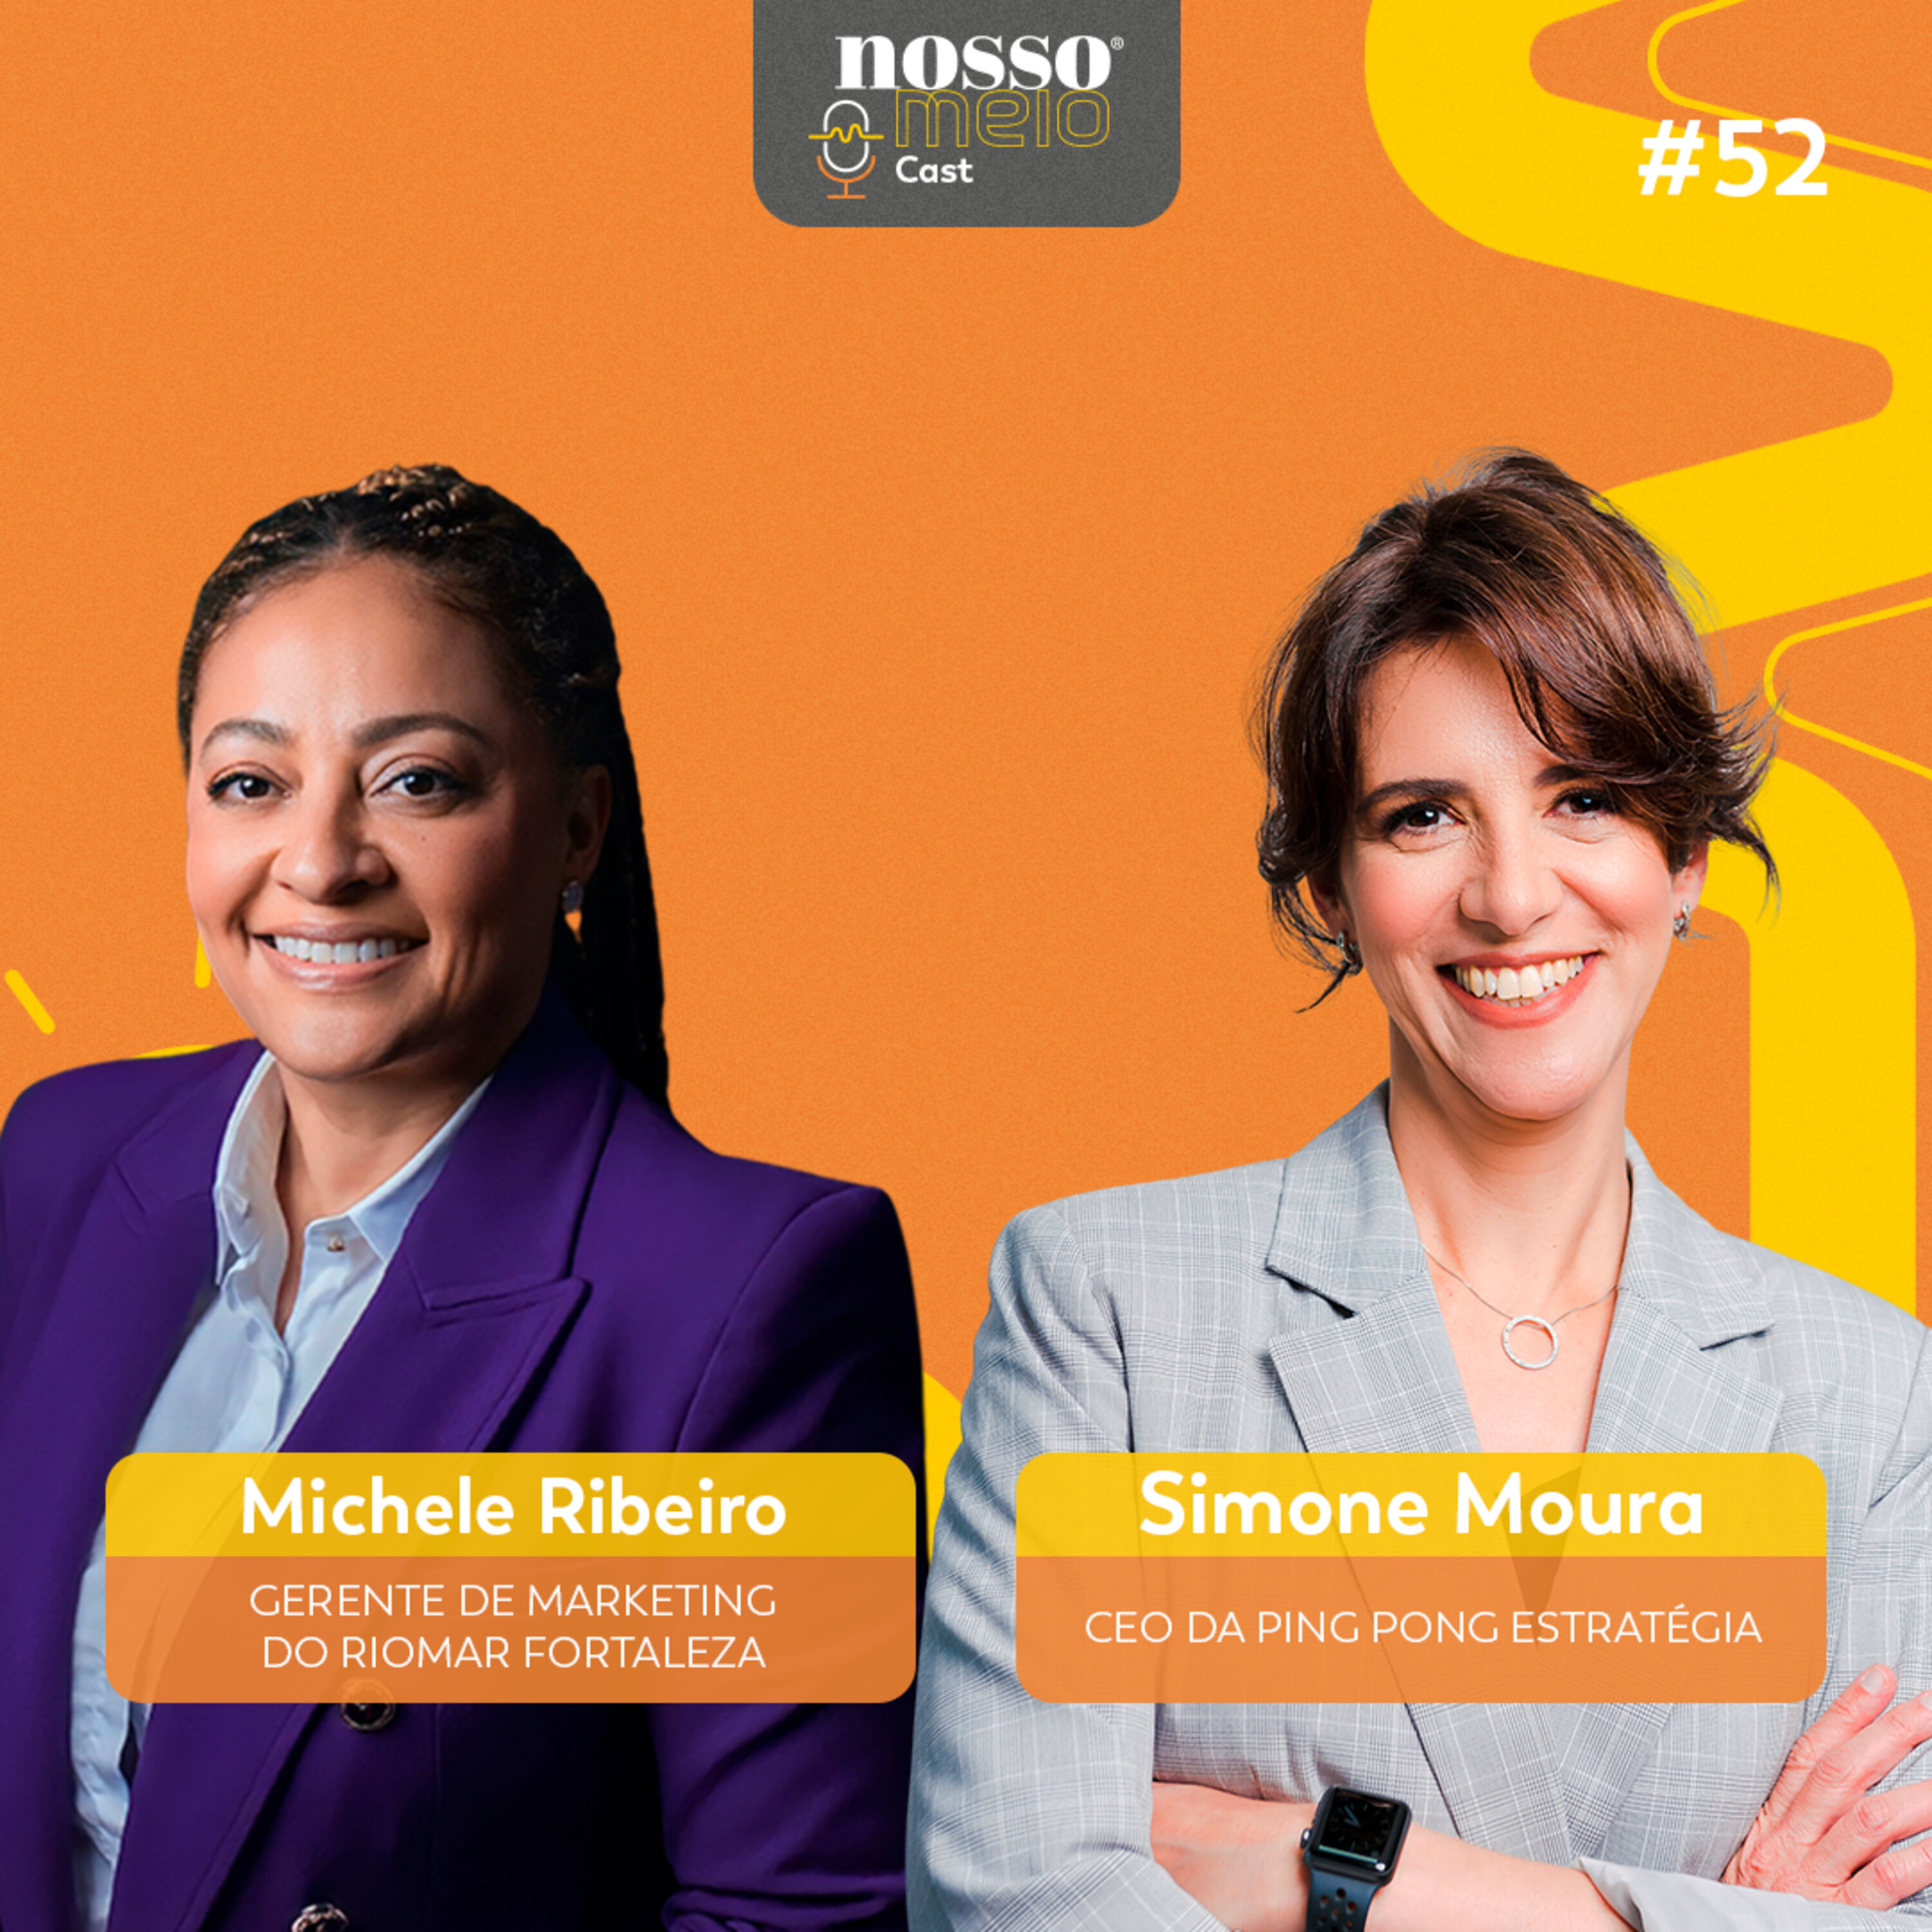 Nosso Meio Cast #52 - A liderança feminina no marketing